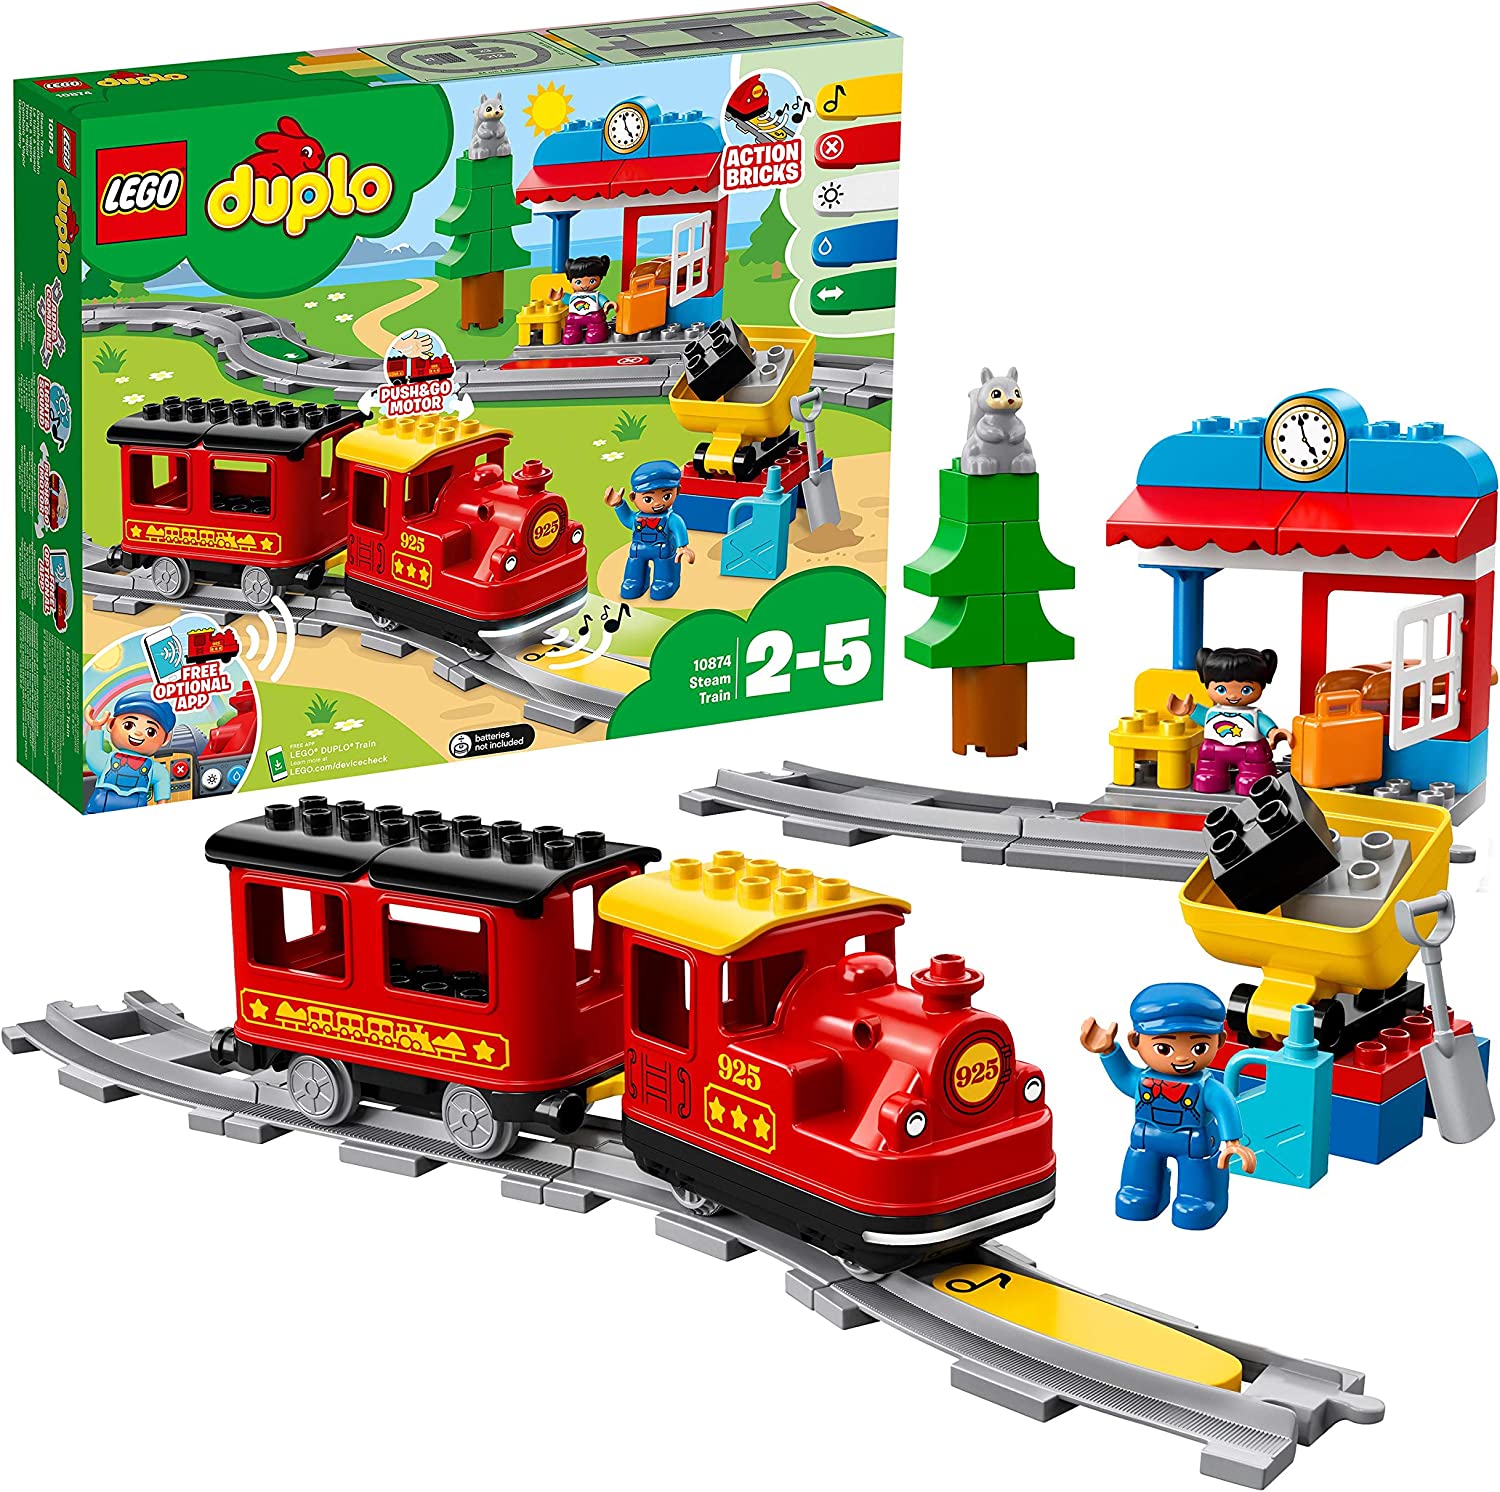 Dampfeisenbahn von LEGO duplo